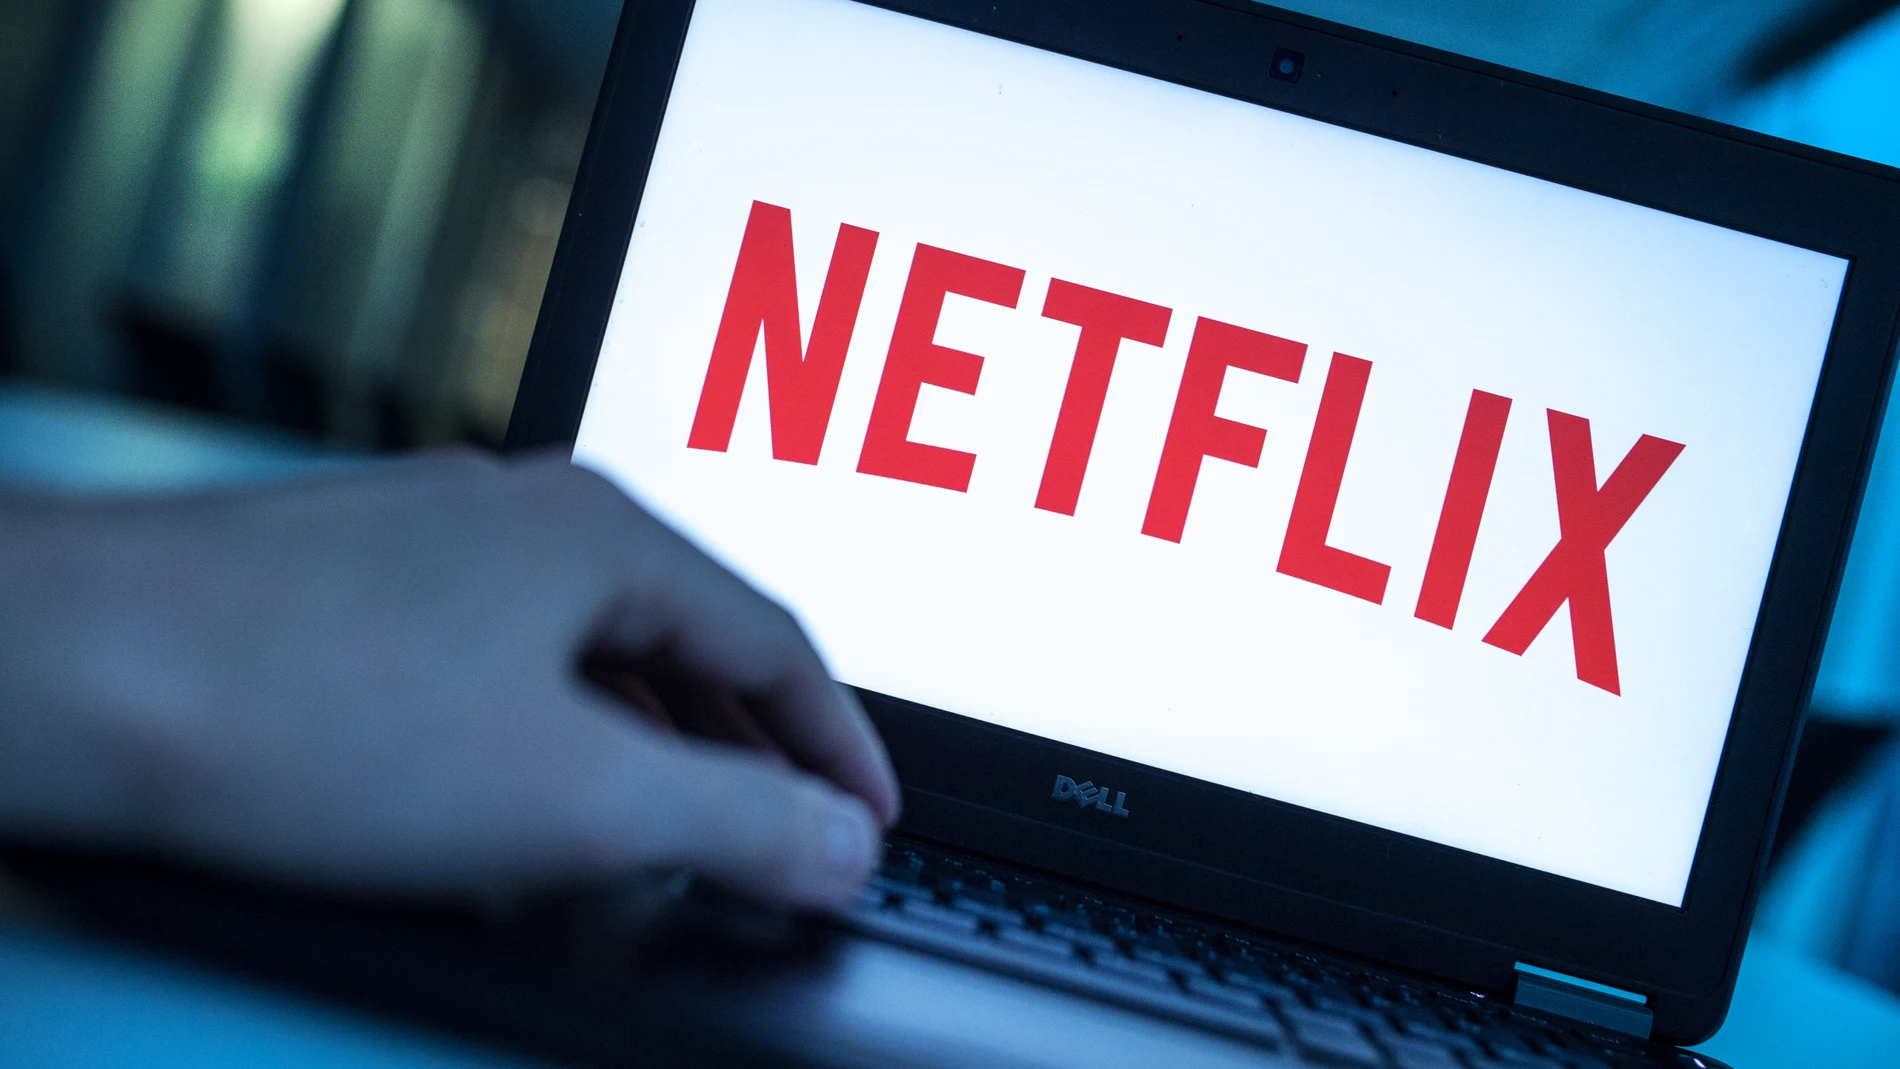 Netflix publicará desde hoy un informe "exhaustivo" sobre lo que los usuarios han visto en la plataforma en seis meses